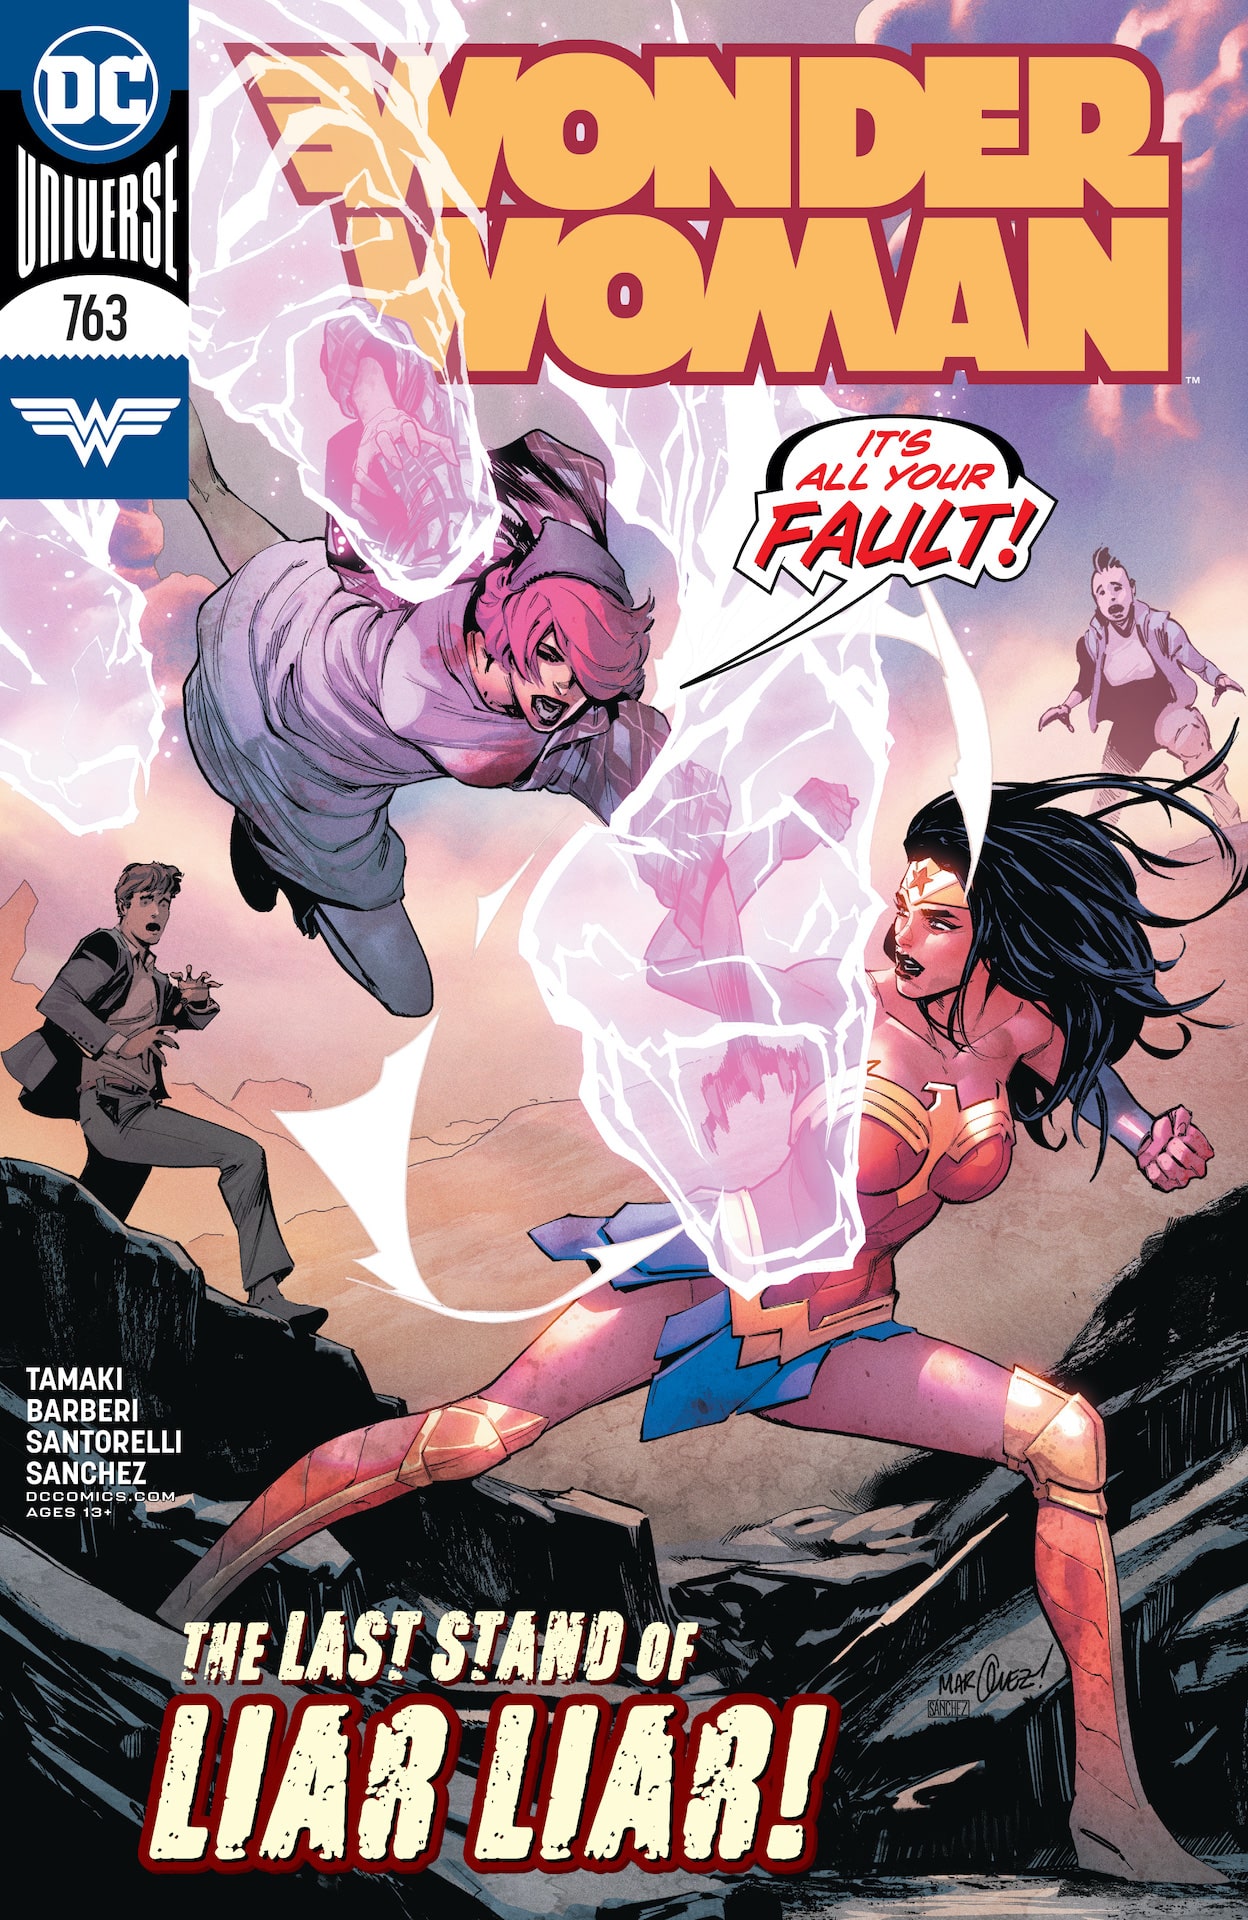 DC Preview: Wonder Woman #362